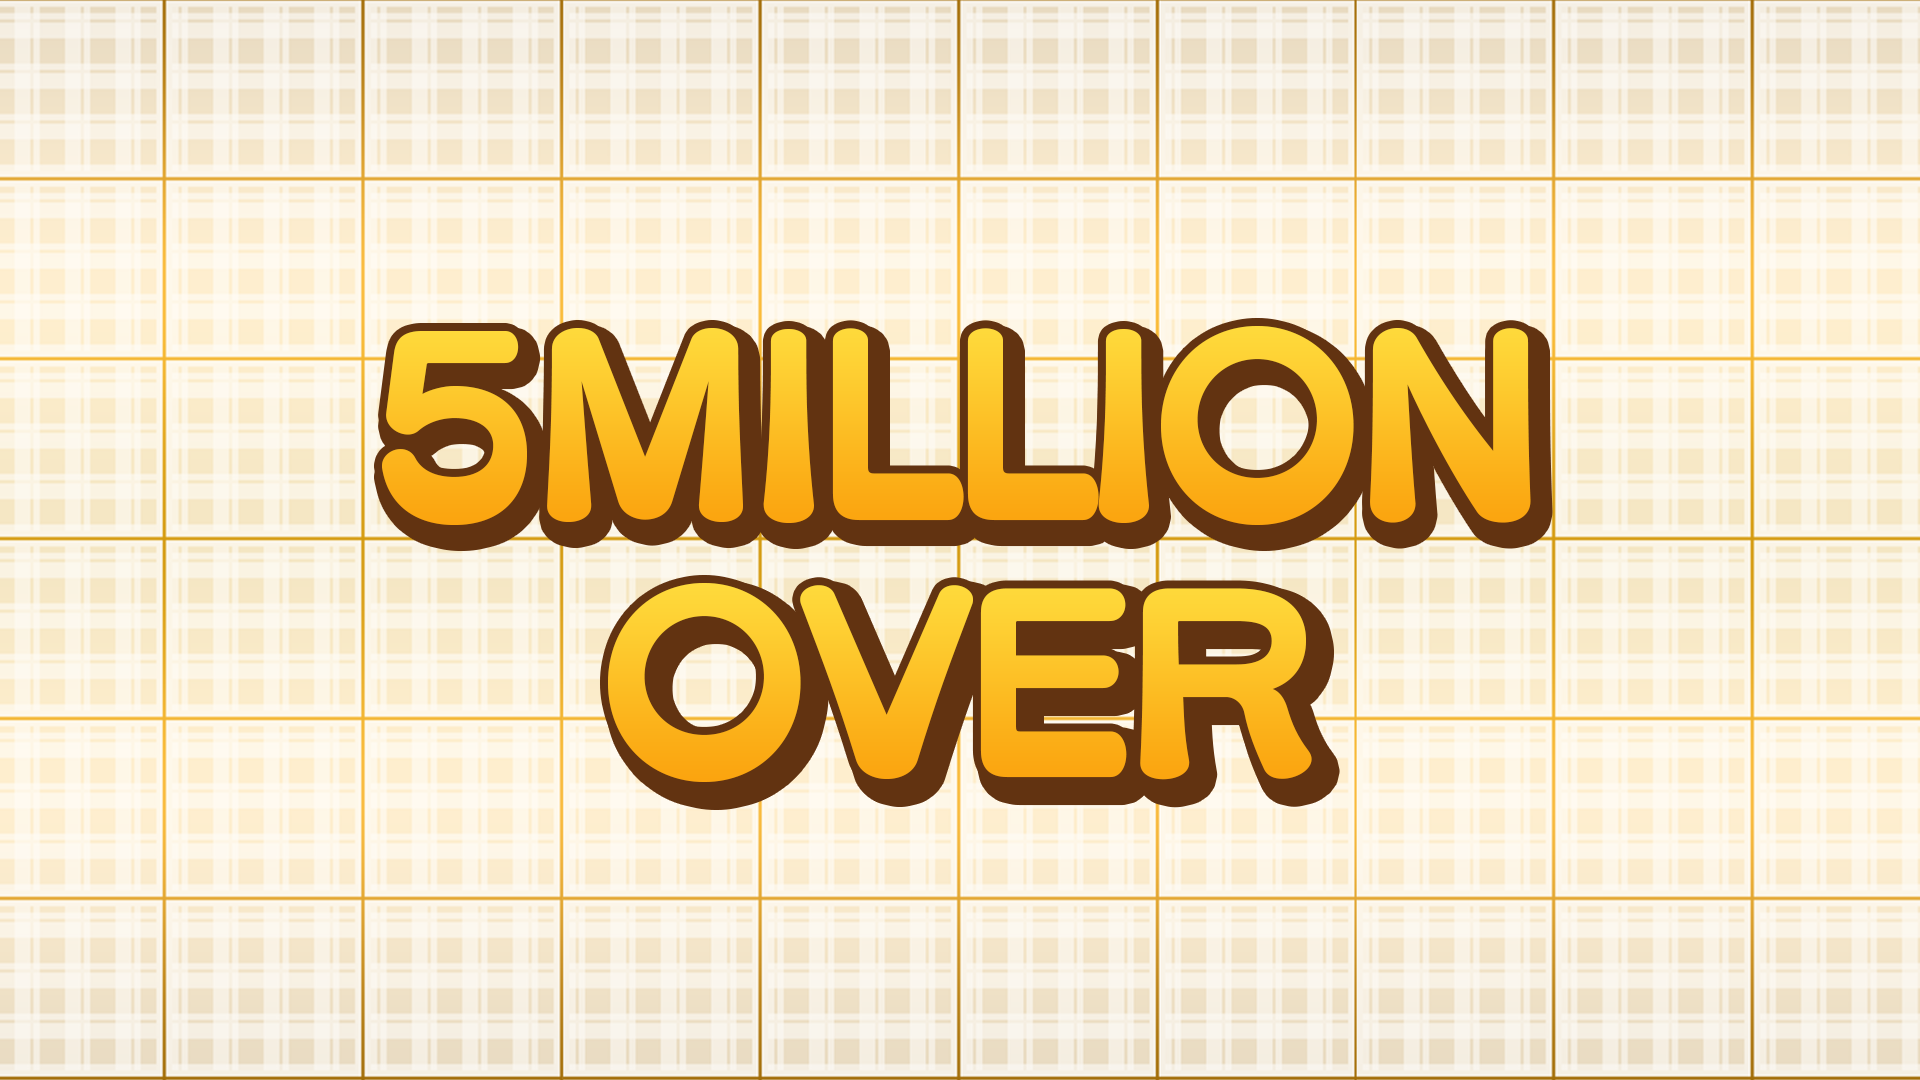 (Puzzle Bobble 2) Over 5 000 000